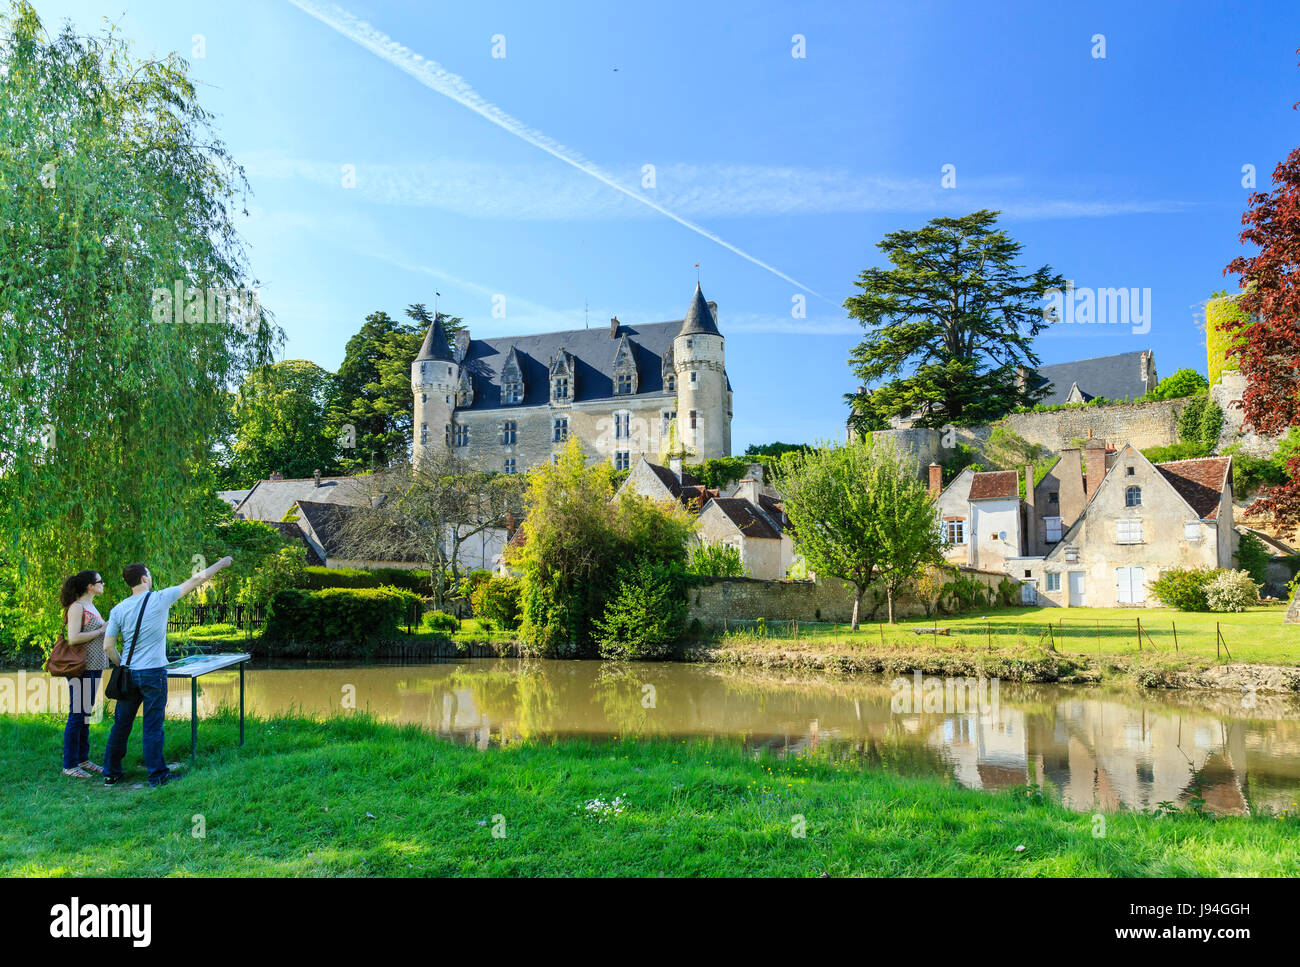 Indre et Loire, Montresor, labelled Les Plus Beaux Villages de France (The Most beautiful Villages of France), houses and castle along Indrois river Stock Photo